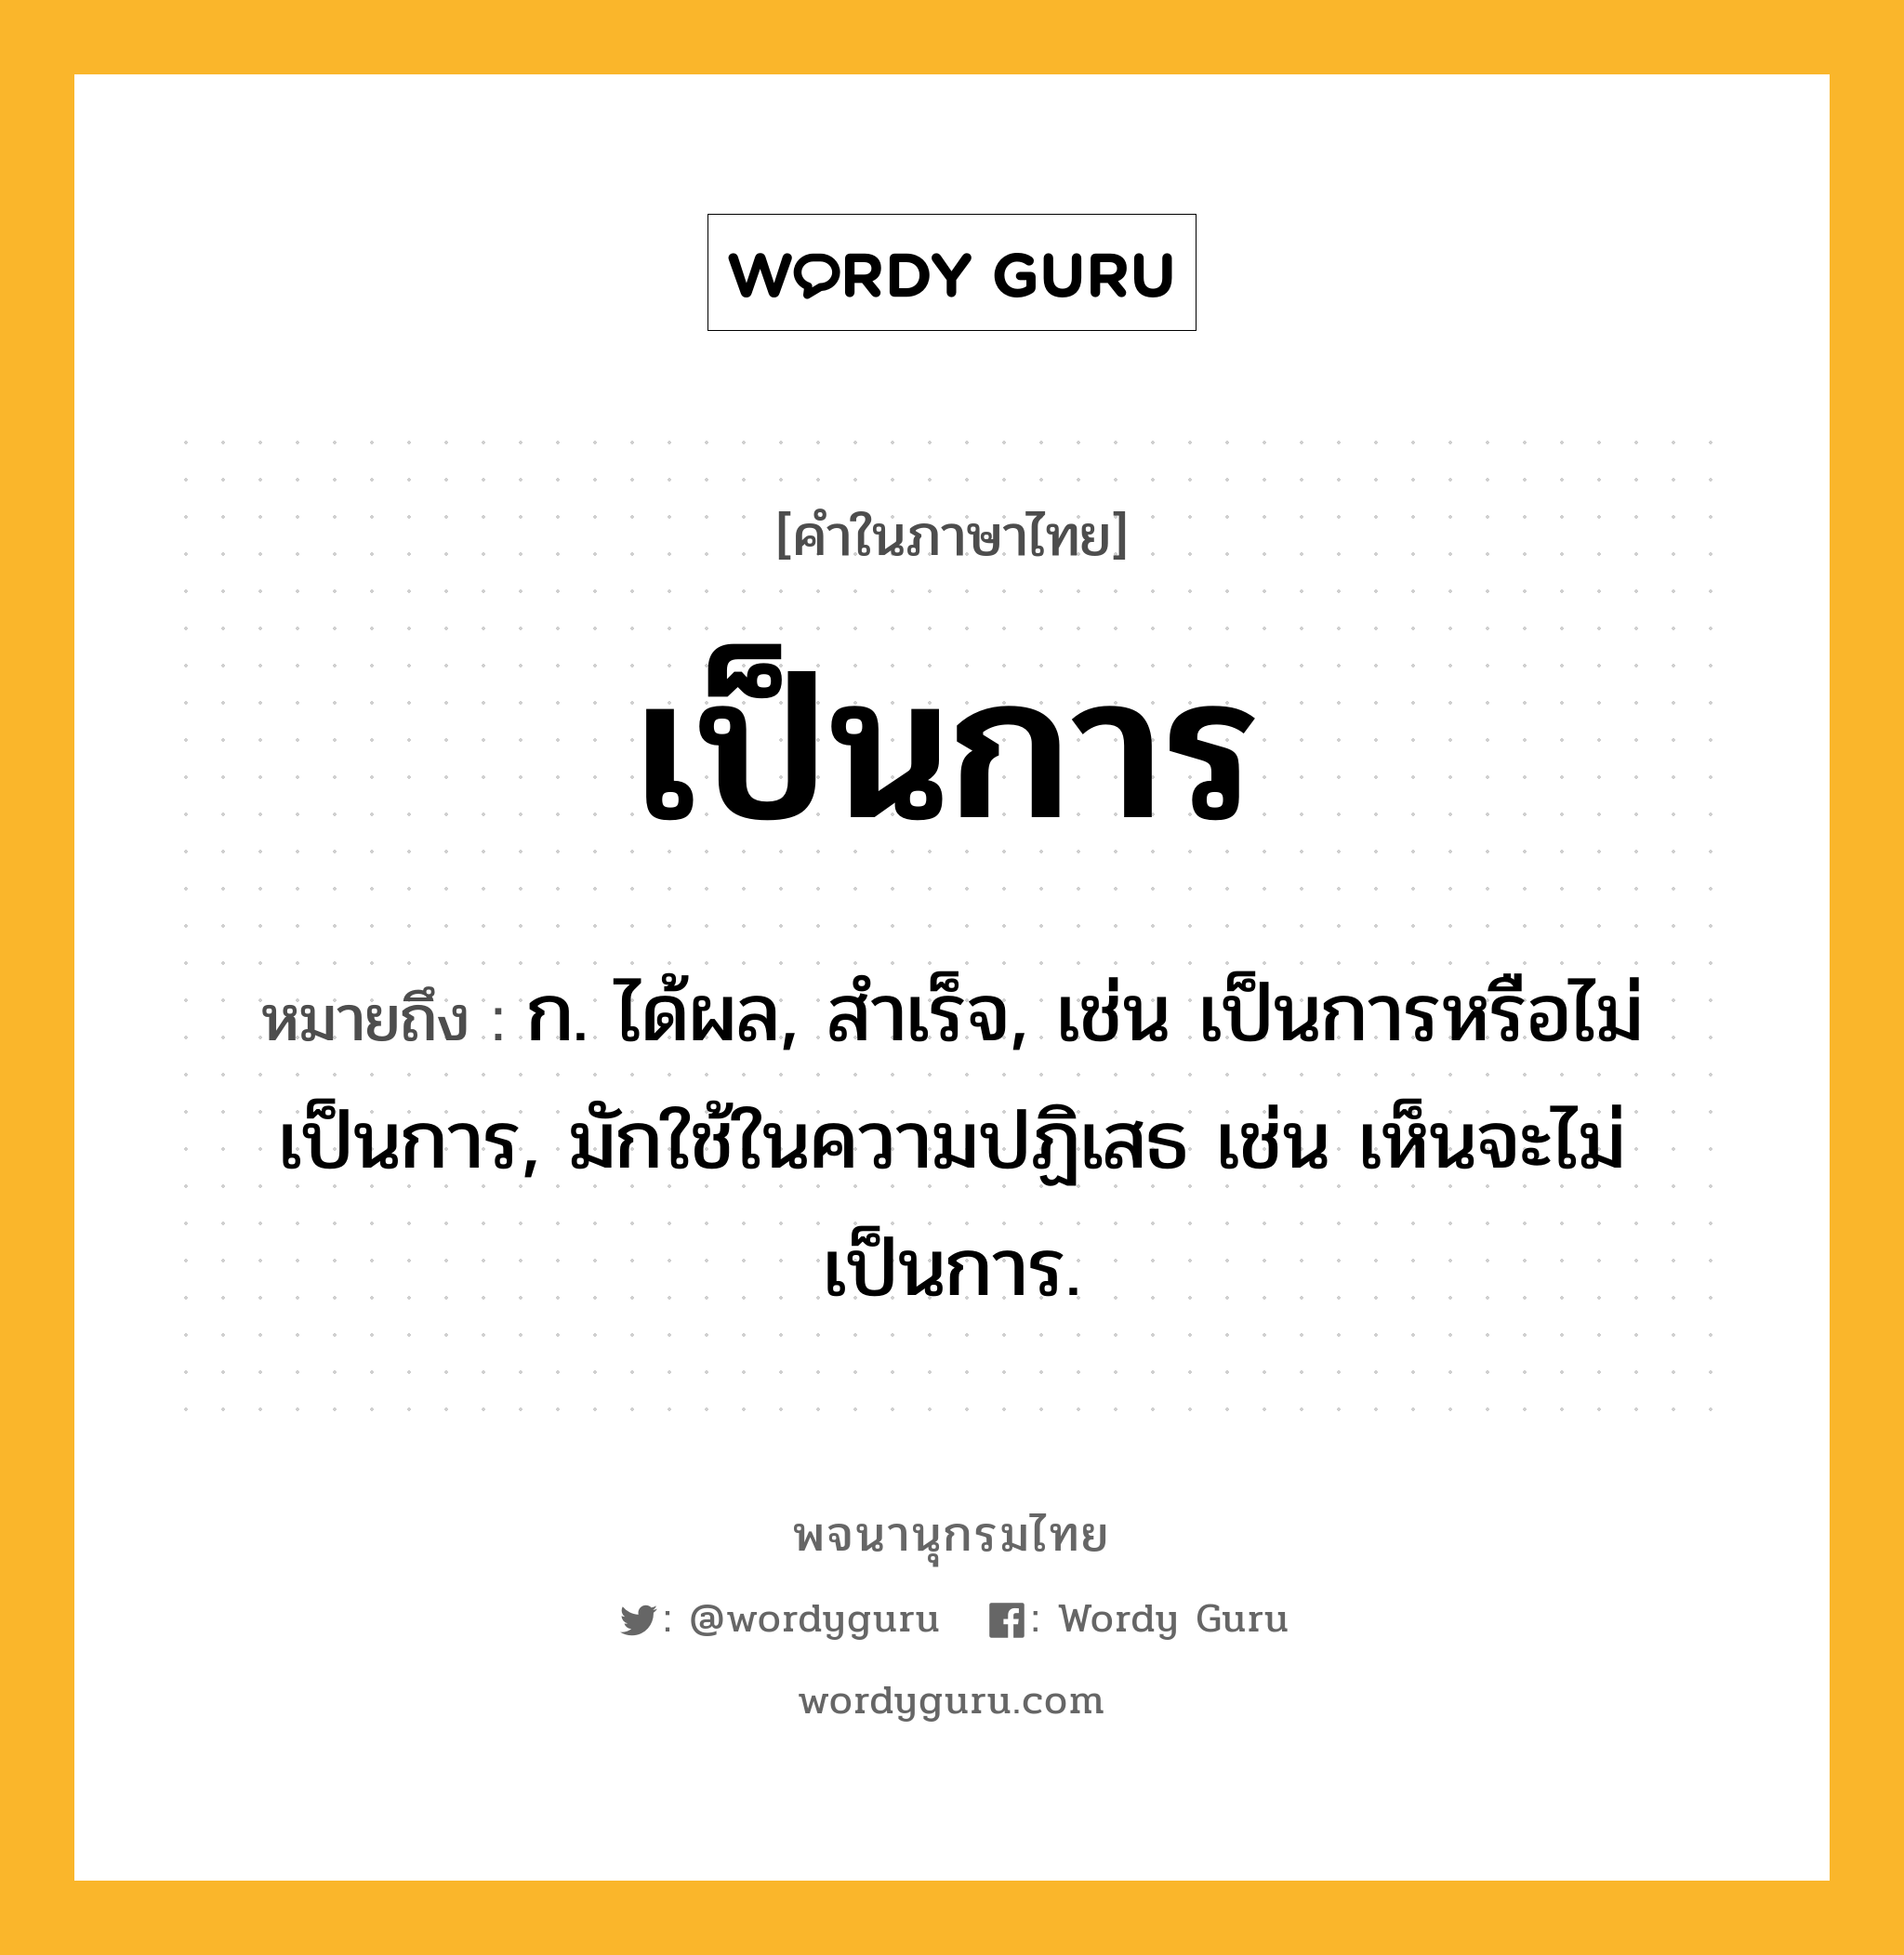 เป็นการ ความหมาย หมายถึงอะไร?, คำในภาษาไทย เป็นการ หมายถึง ก. ได้ผล, สําเร็จ, เช่น เป็นการหรือไม่เป็นการ, มักใช้ในความปฏิเสธ เช่น เห็นจะไม่เป็นการ.